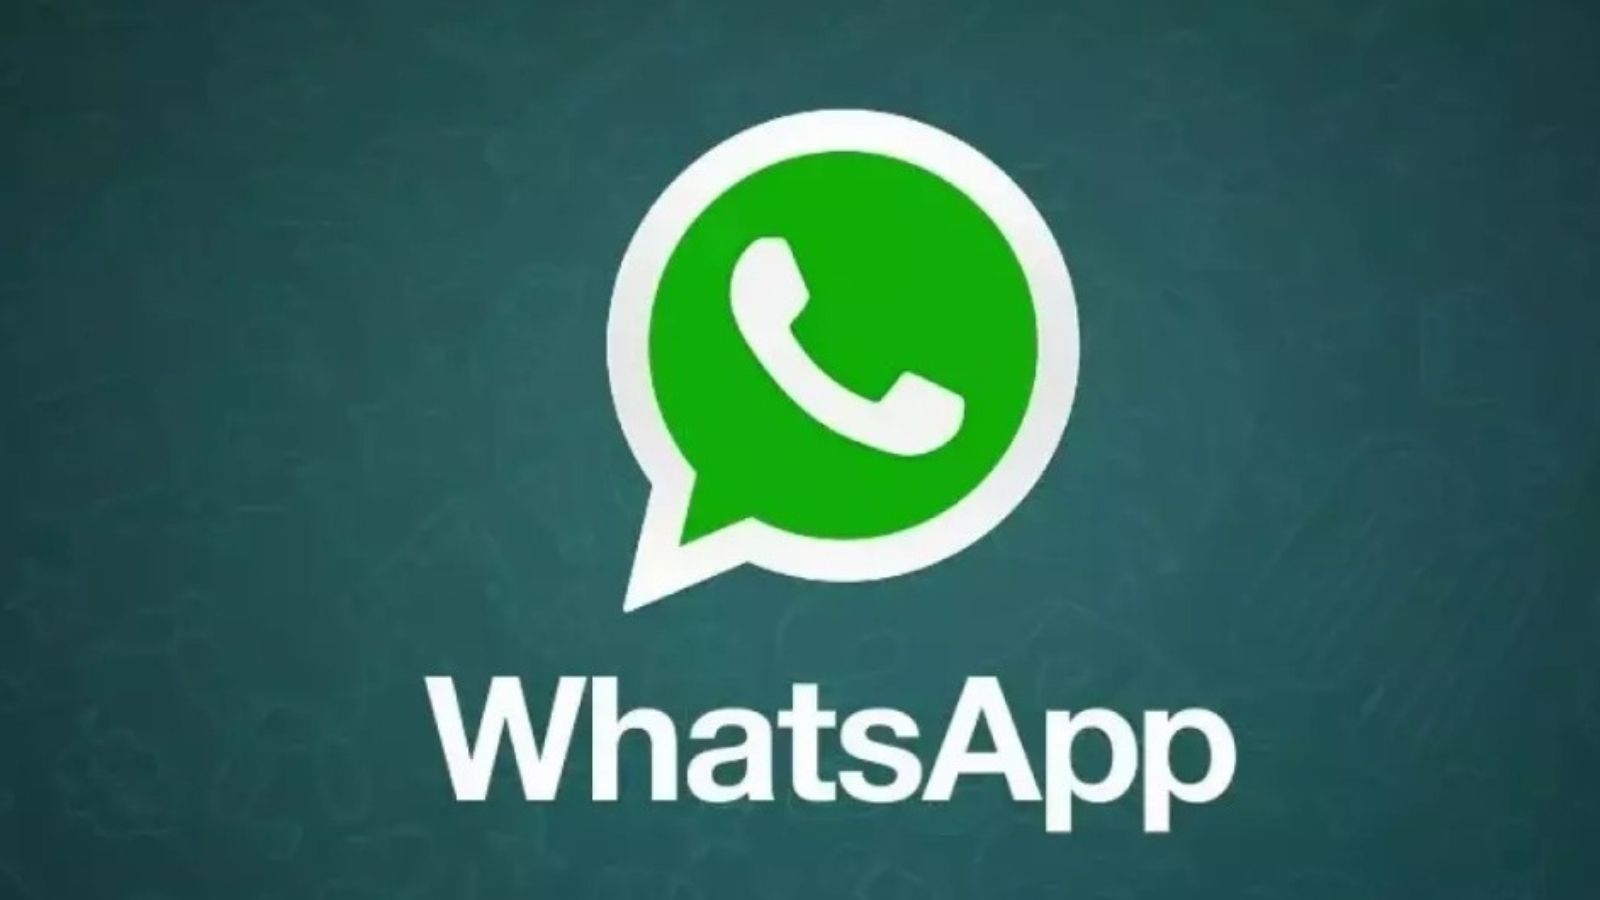 WhatsApp ultimo aggiornamento novità 